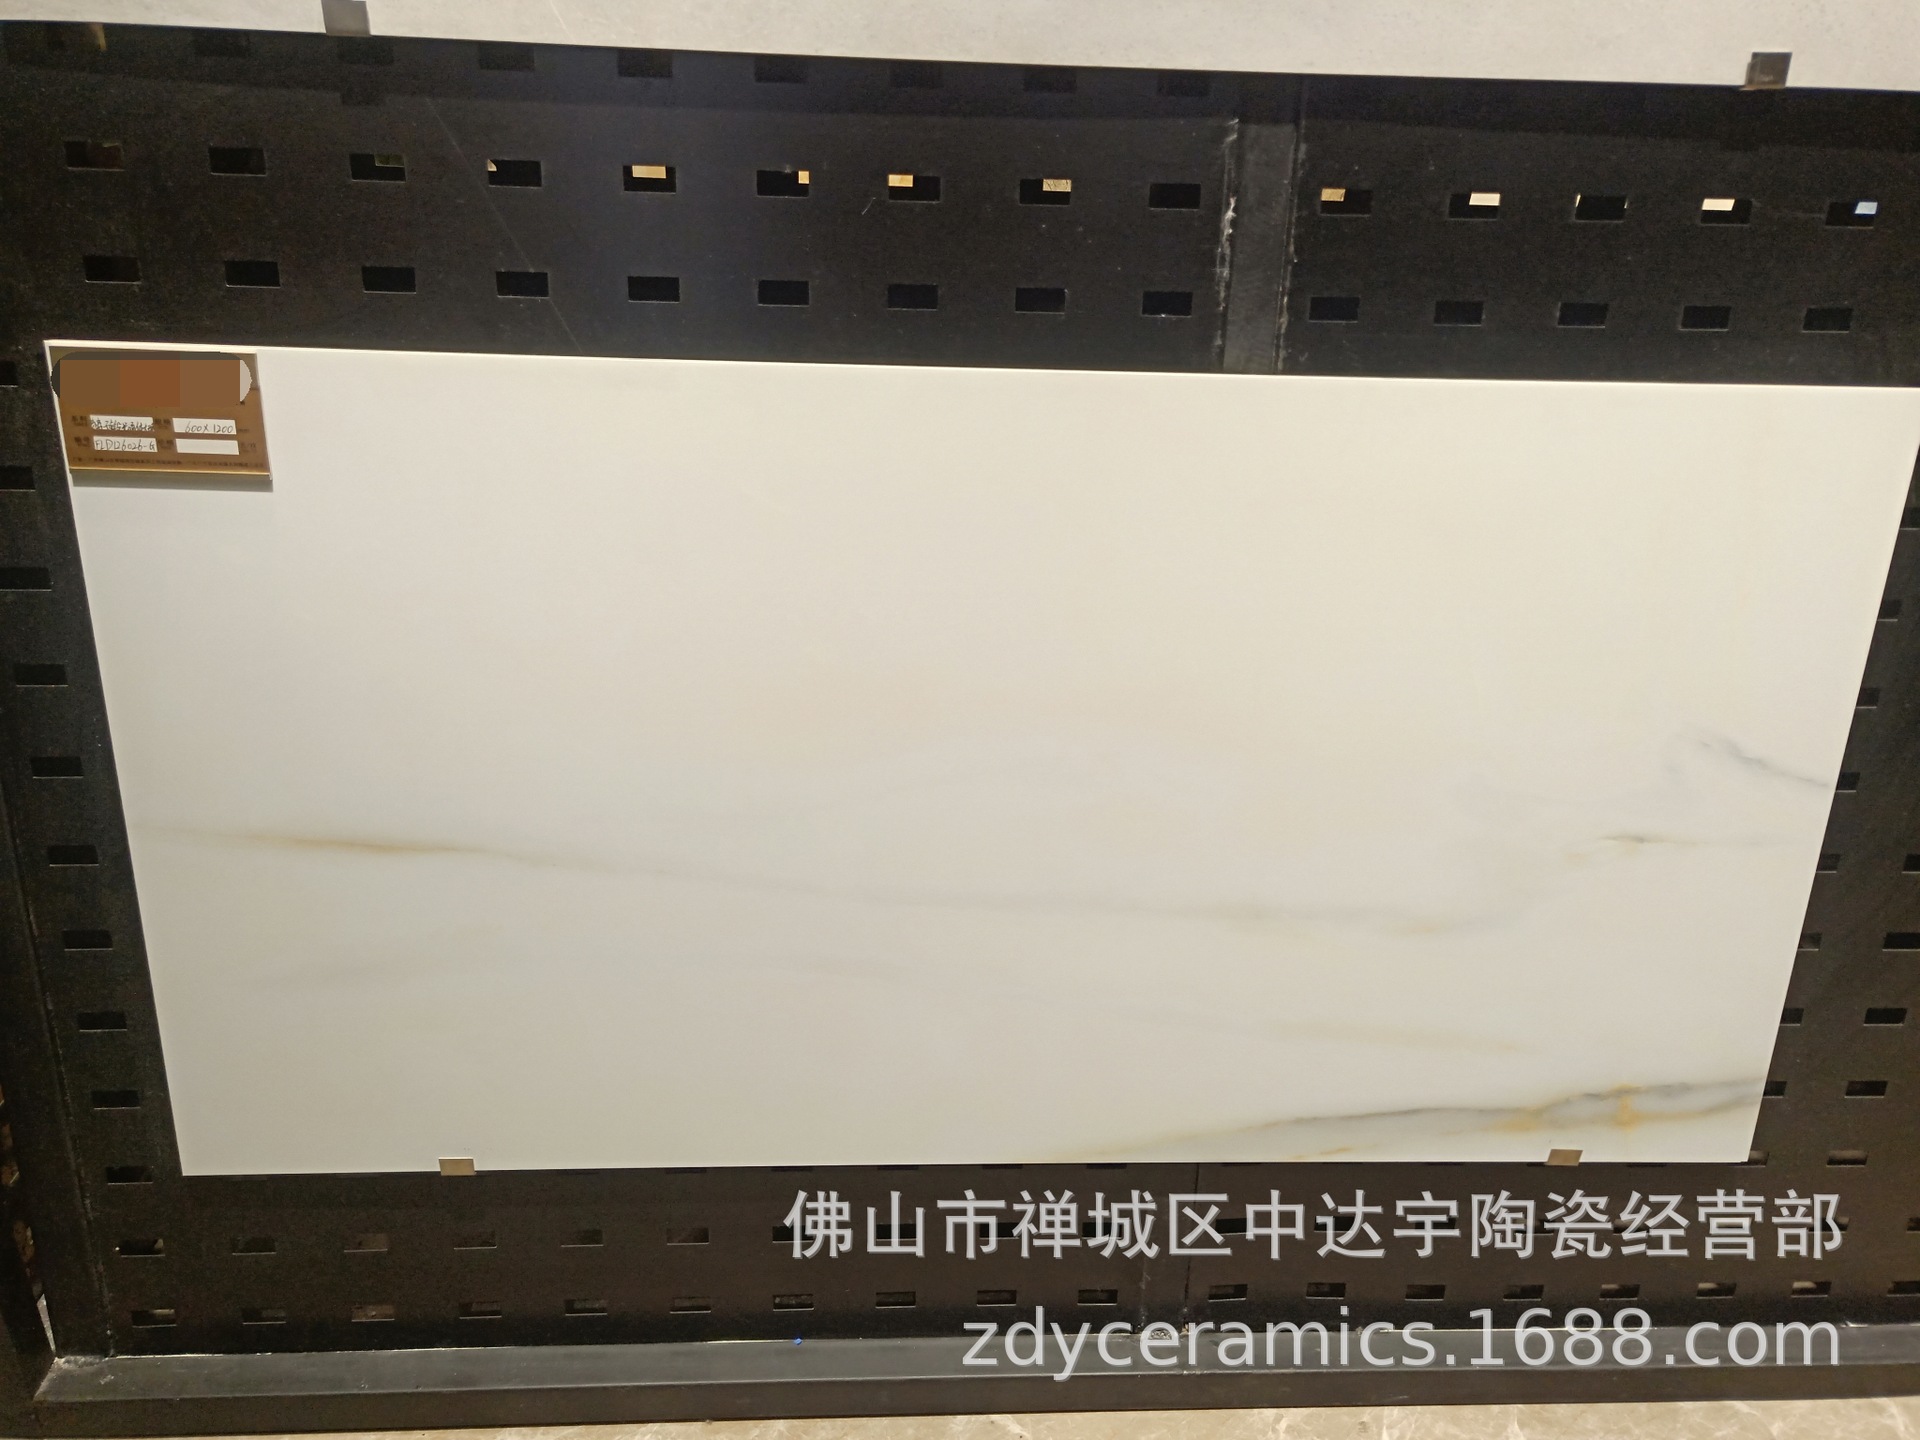 FQfs柔光亮光600x1200mm一石两面负离子通体大理石客厅卫生间瓷砖 安达仕陶瓷示例图47